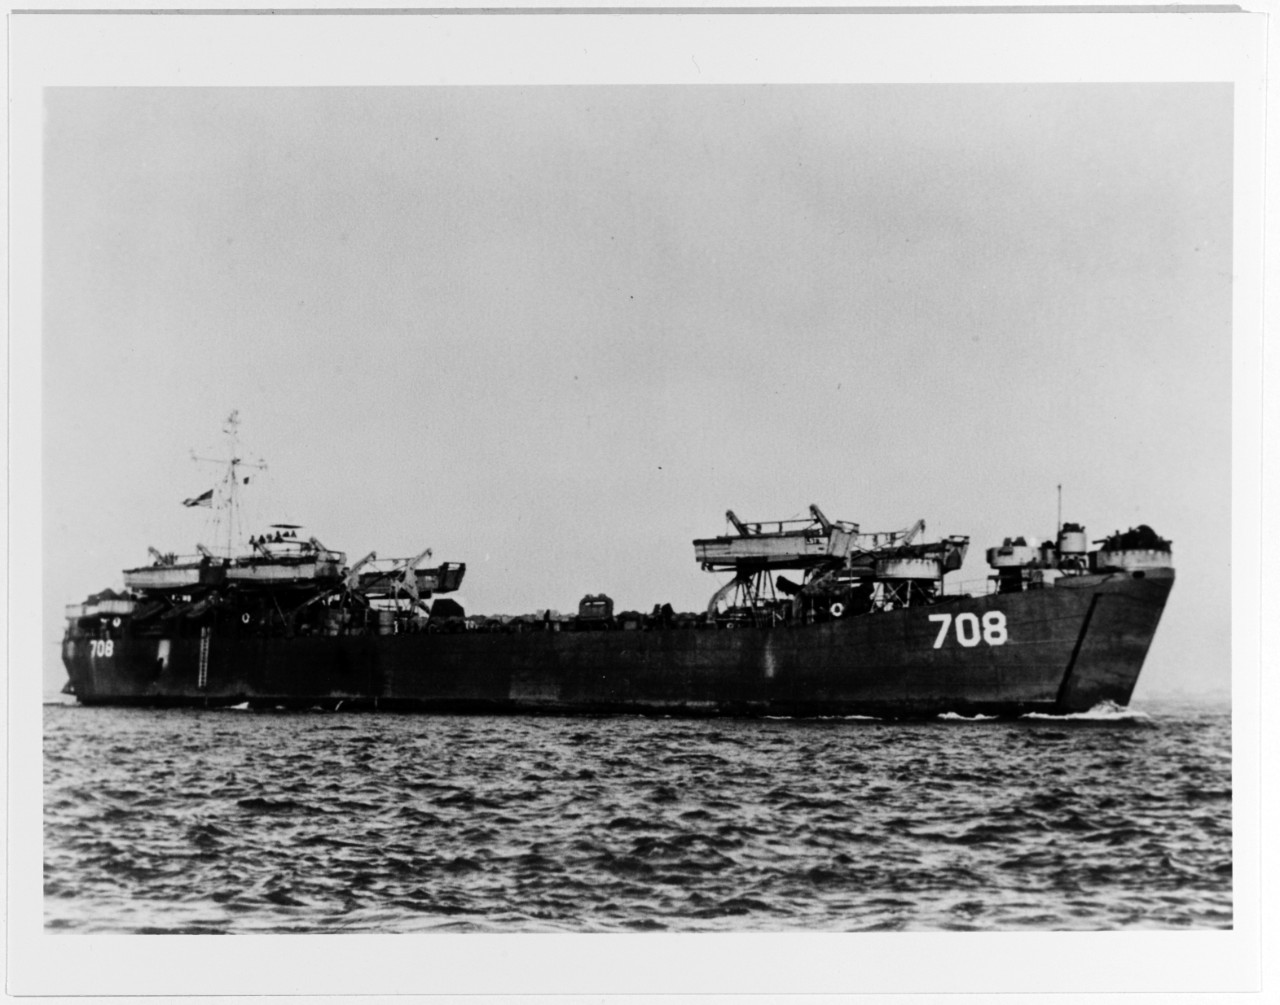 USS LST-708